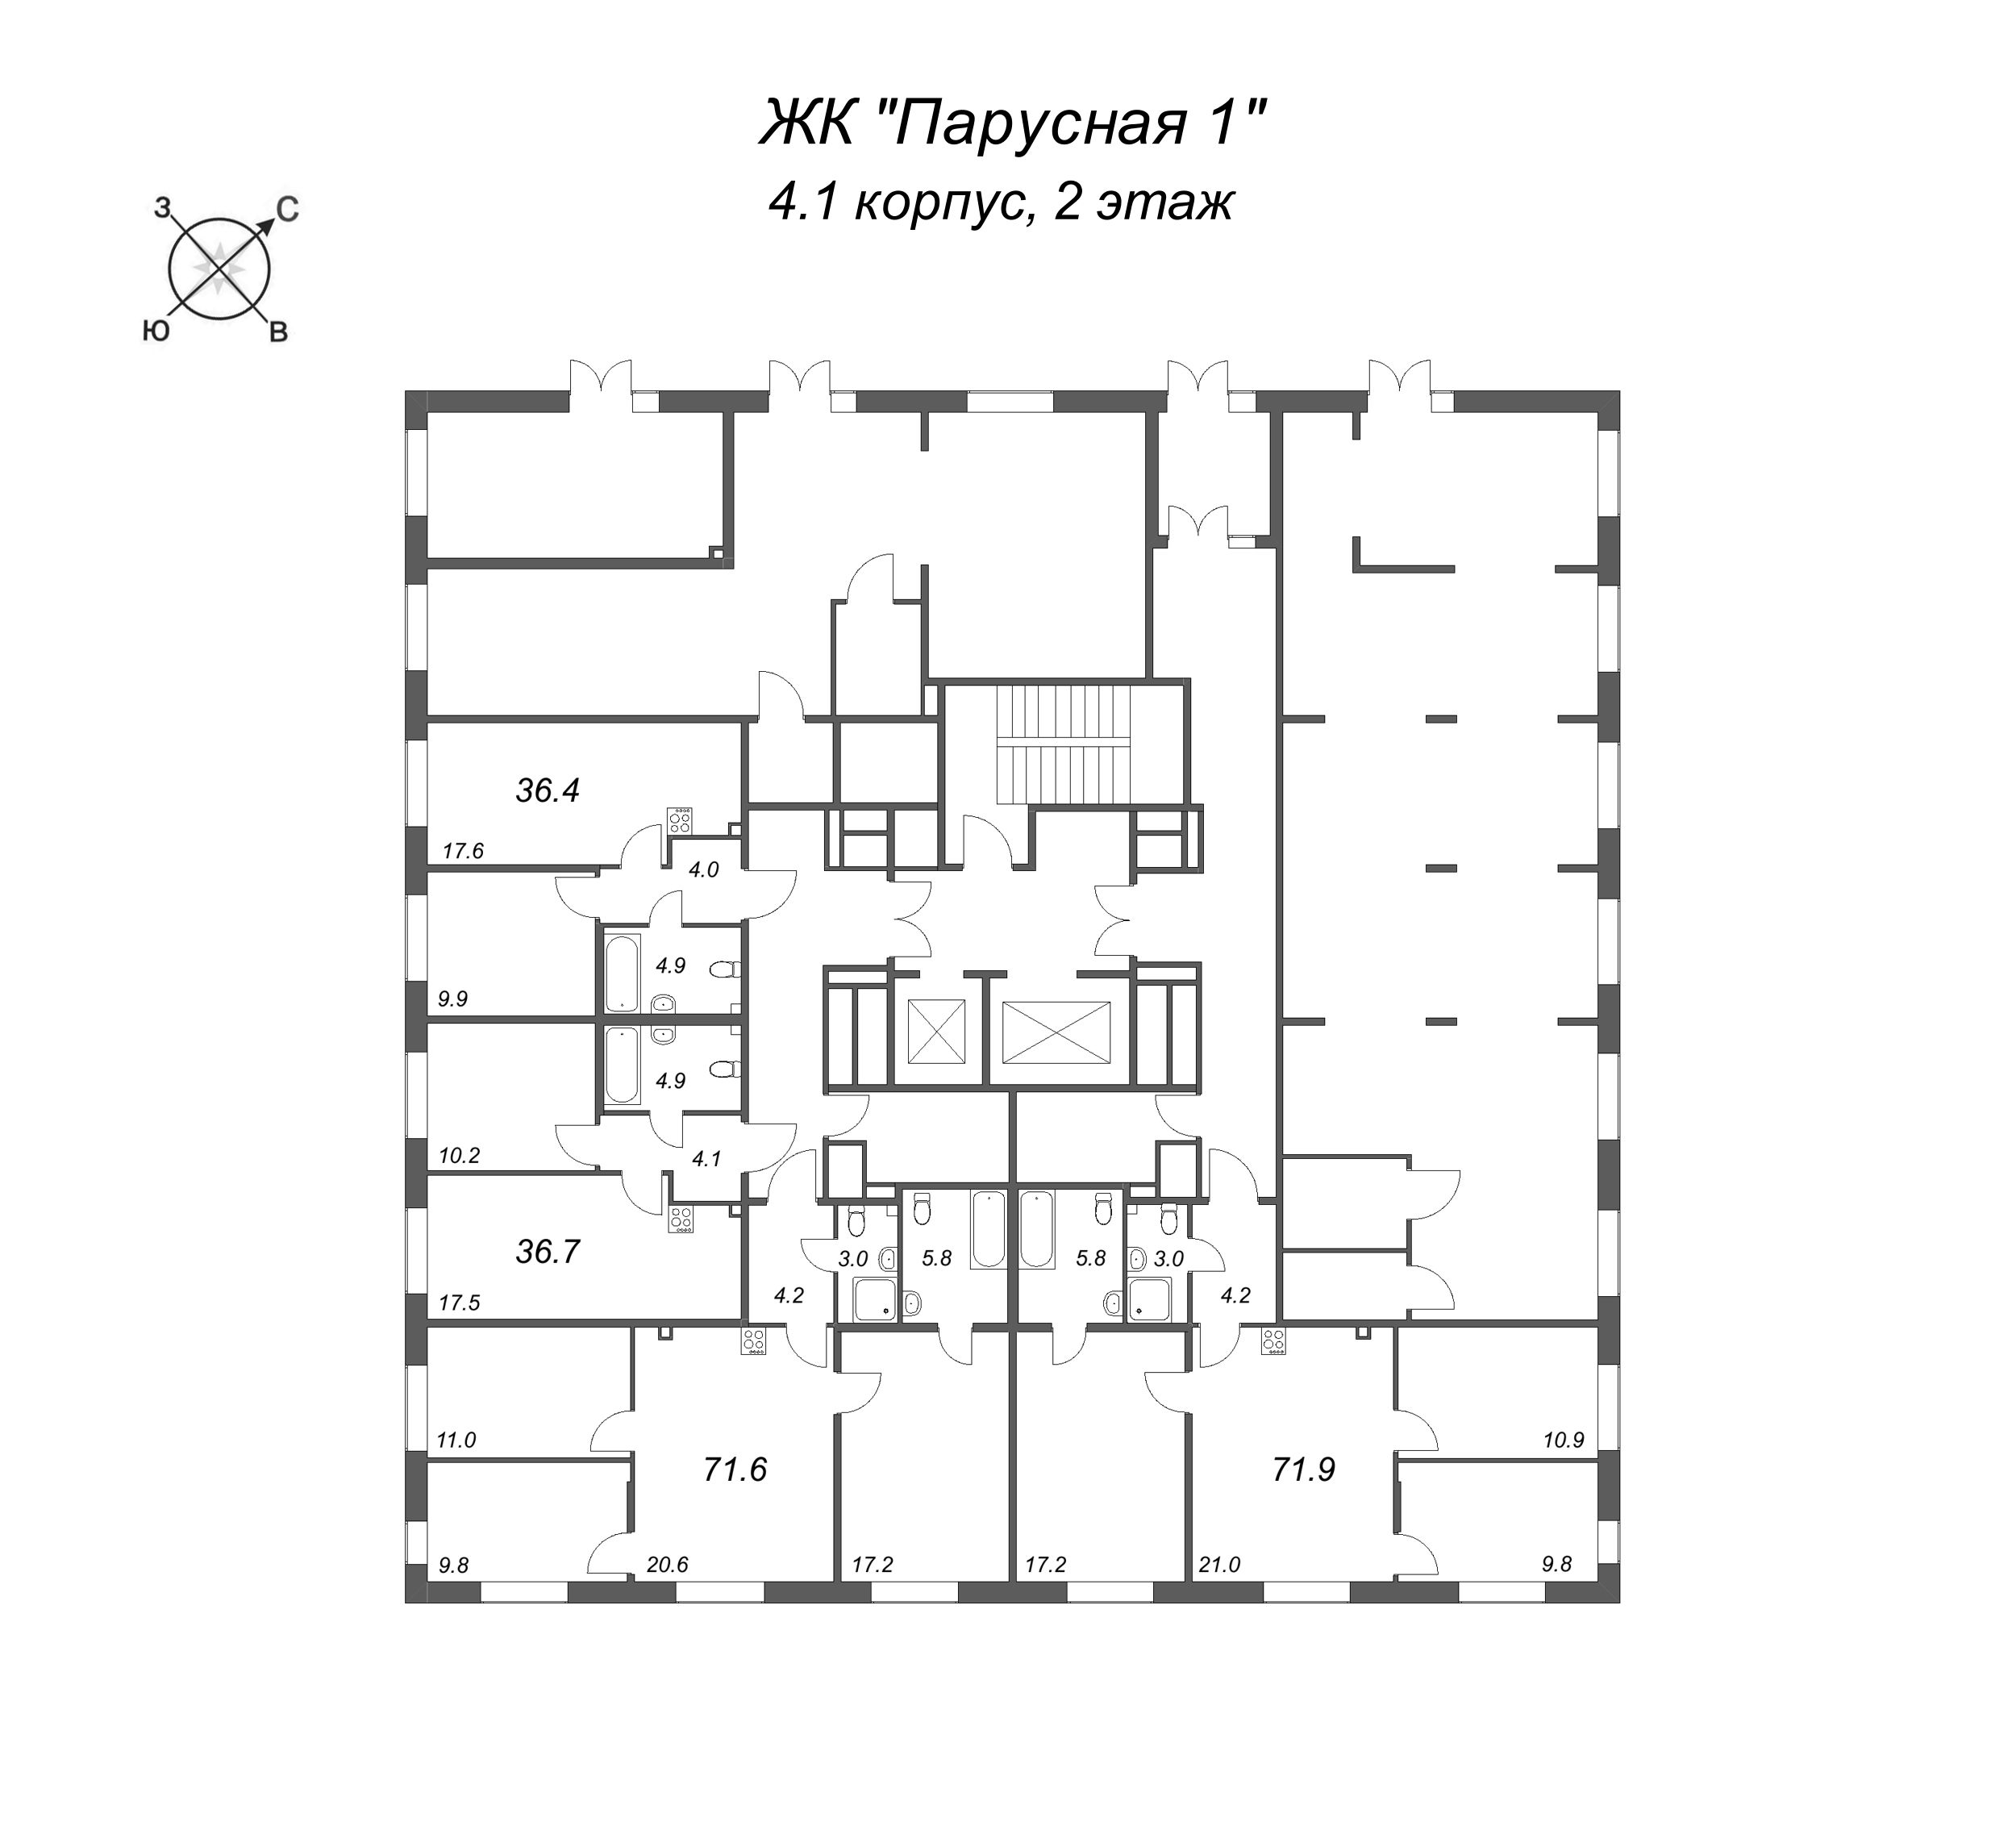 2-комнатная (Евро) квартира, 36.4 м² в ЖК "Парусная 1" - планировка этажа